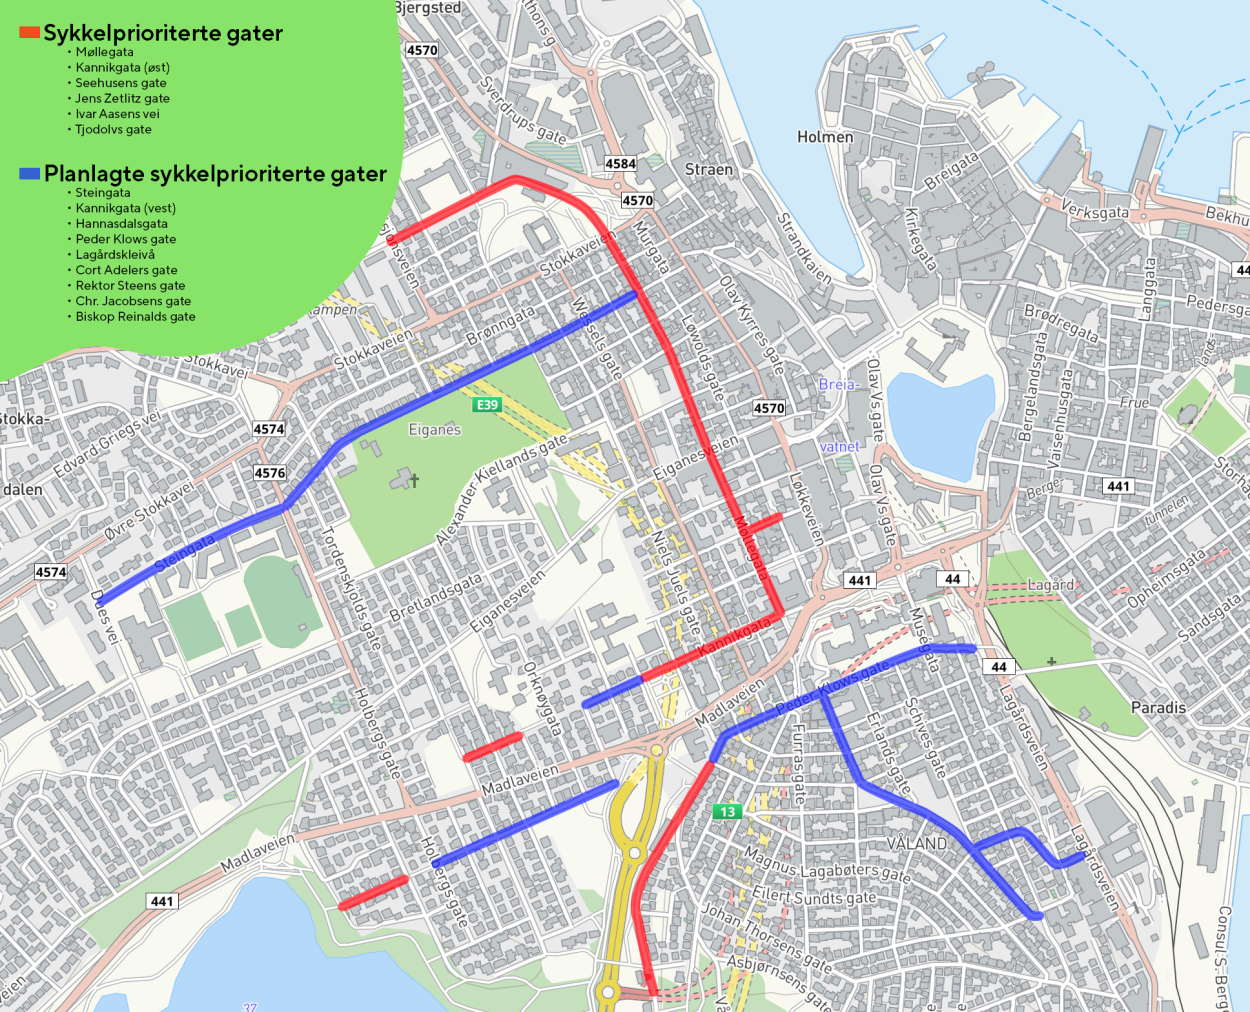 Kart over sykkelprioriterte gater og planlagte sykkelprioriterte gater i Stavanger.